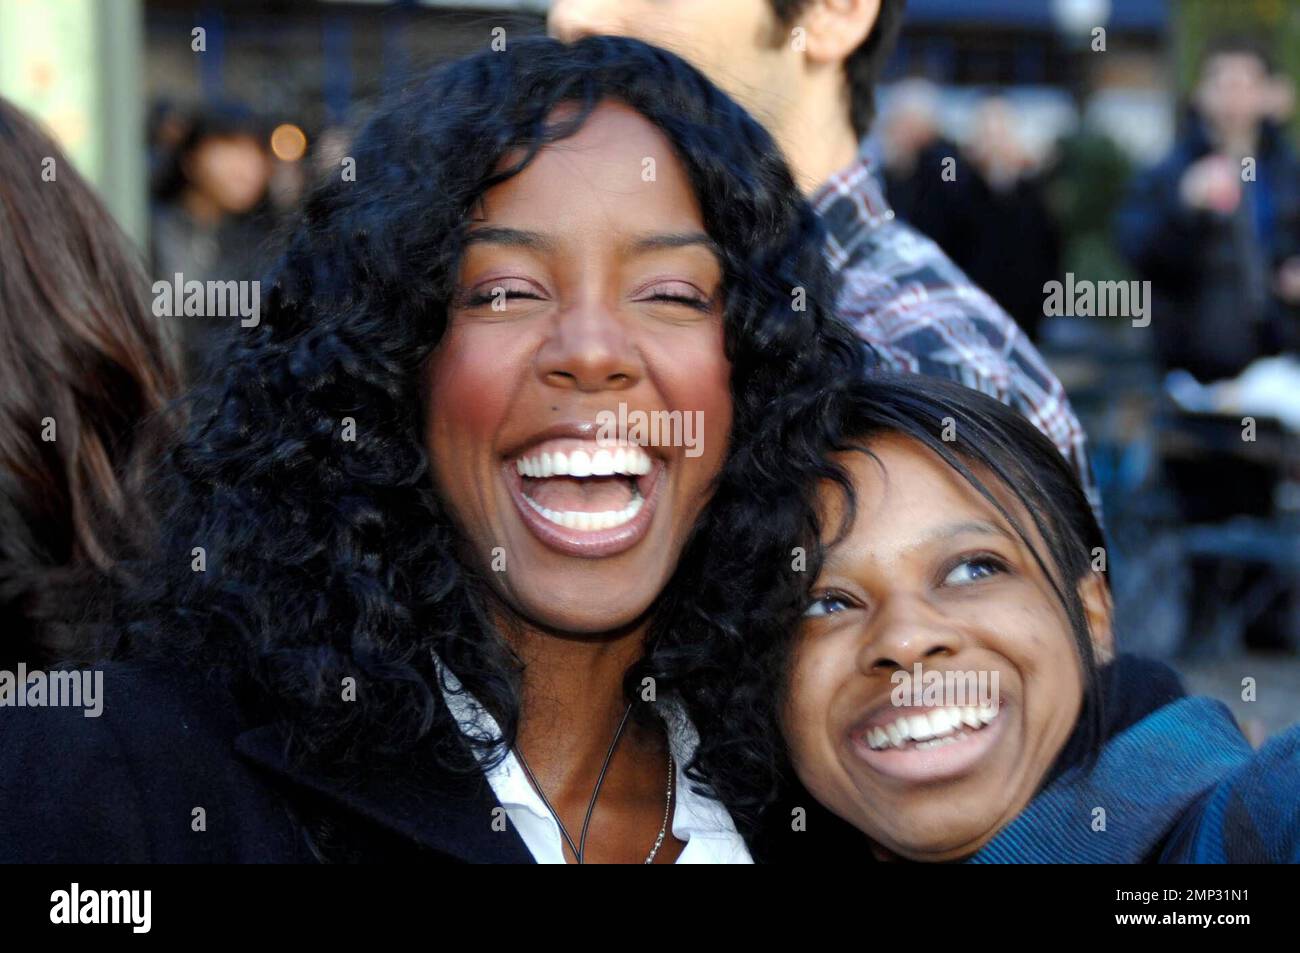 MAVRIXPHOTO.COM Kelly Rowland zeigt Fans und Fotografen auf einer Fashion Week-Veranstaltung etwas Liebe. New York, NY. 2/07/08. Verfasserzeile und/oder Link zur Internetnutzung muss MAVRIXPHOTO.COM lauten. Wenn die Verfasserzeile nicht korrekt ist, wird die vereinbarte Gebühr verdoppelt. Stockfoto